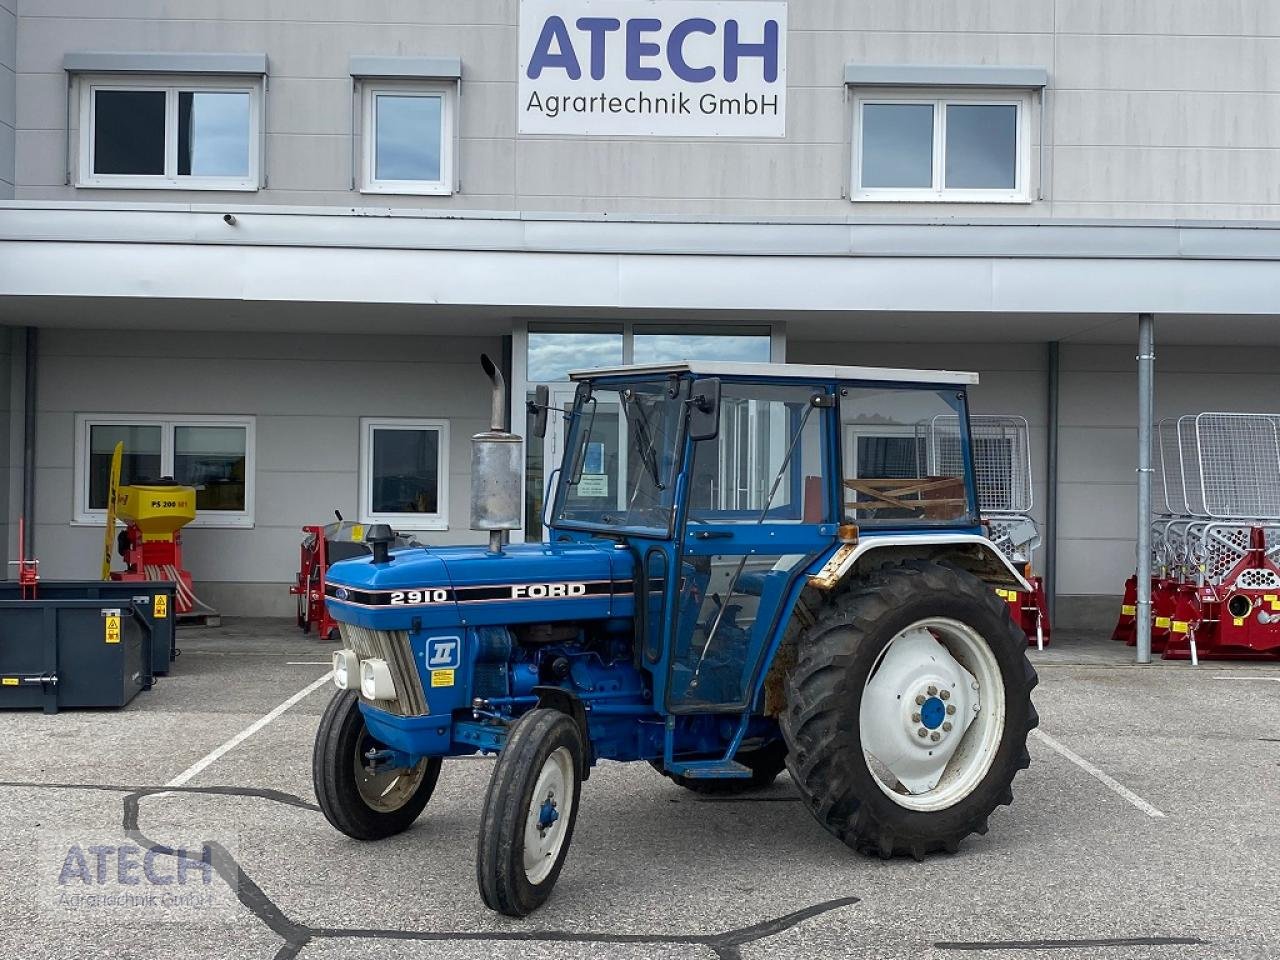 Traktor des Typs Ford 2910, Gebrauchtmaschine in Velburg (Bild 1)